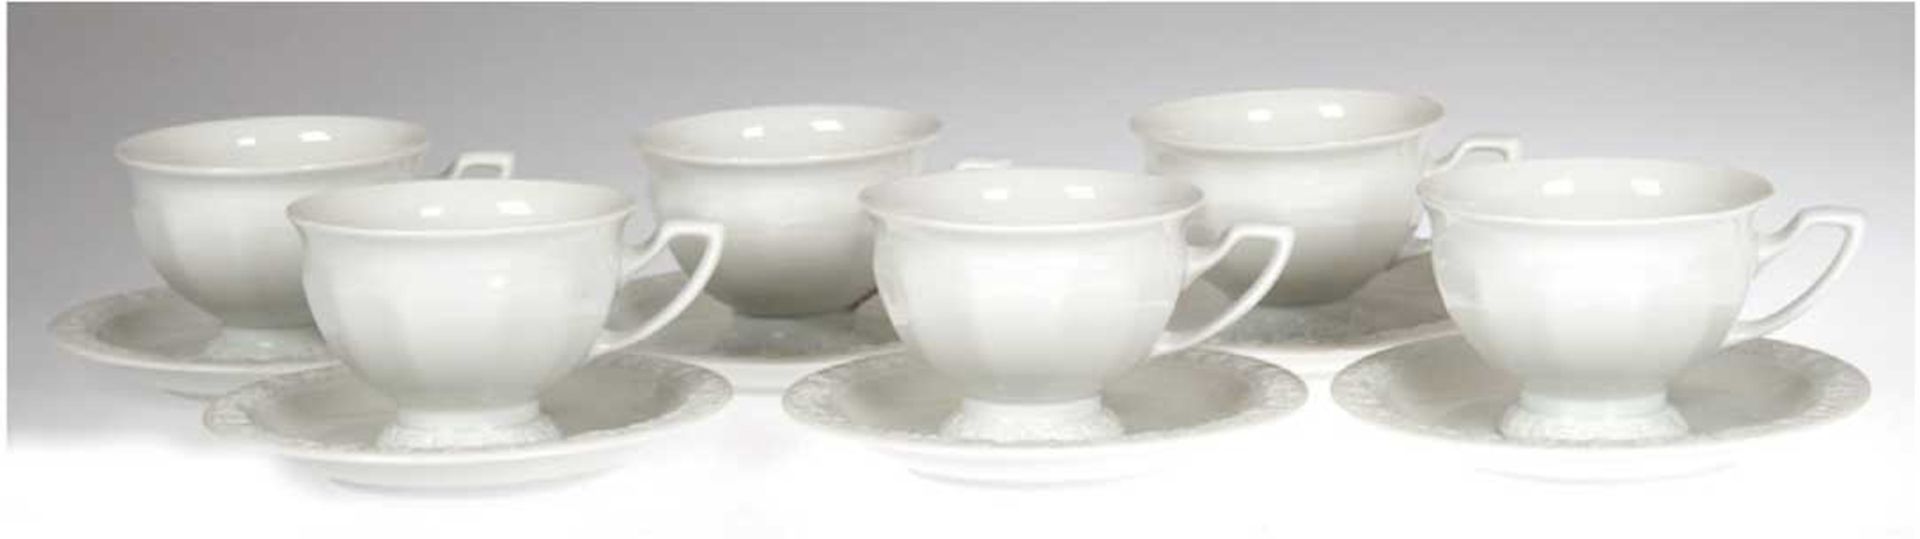 6 Tassen mit UT, Rosenthal, Maria weiß, H. 6,5 cm